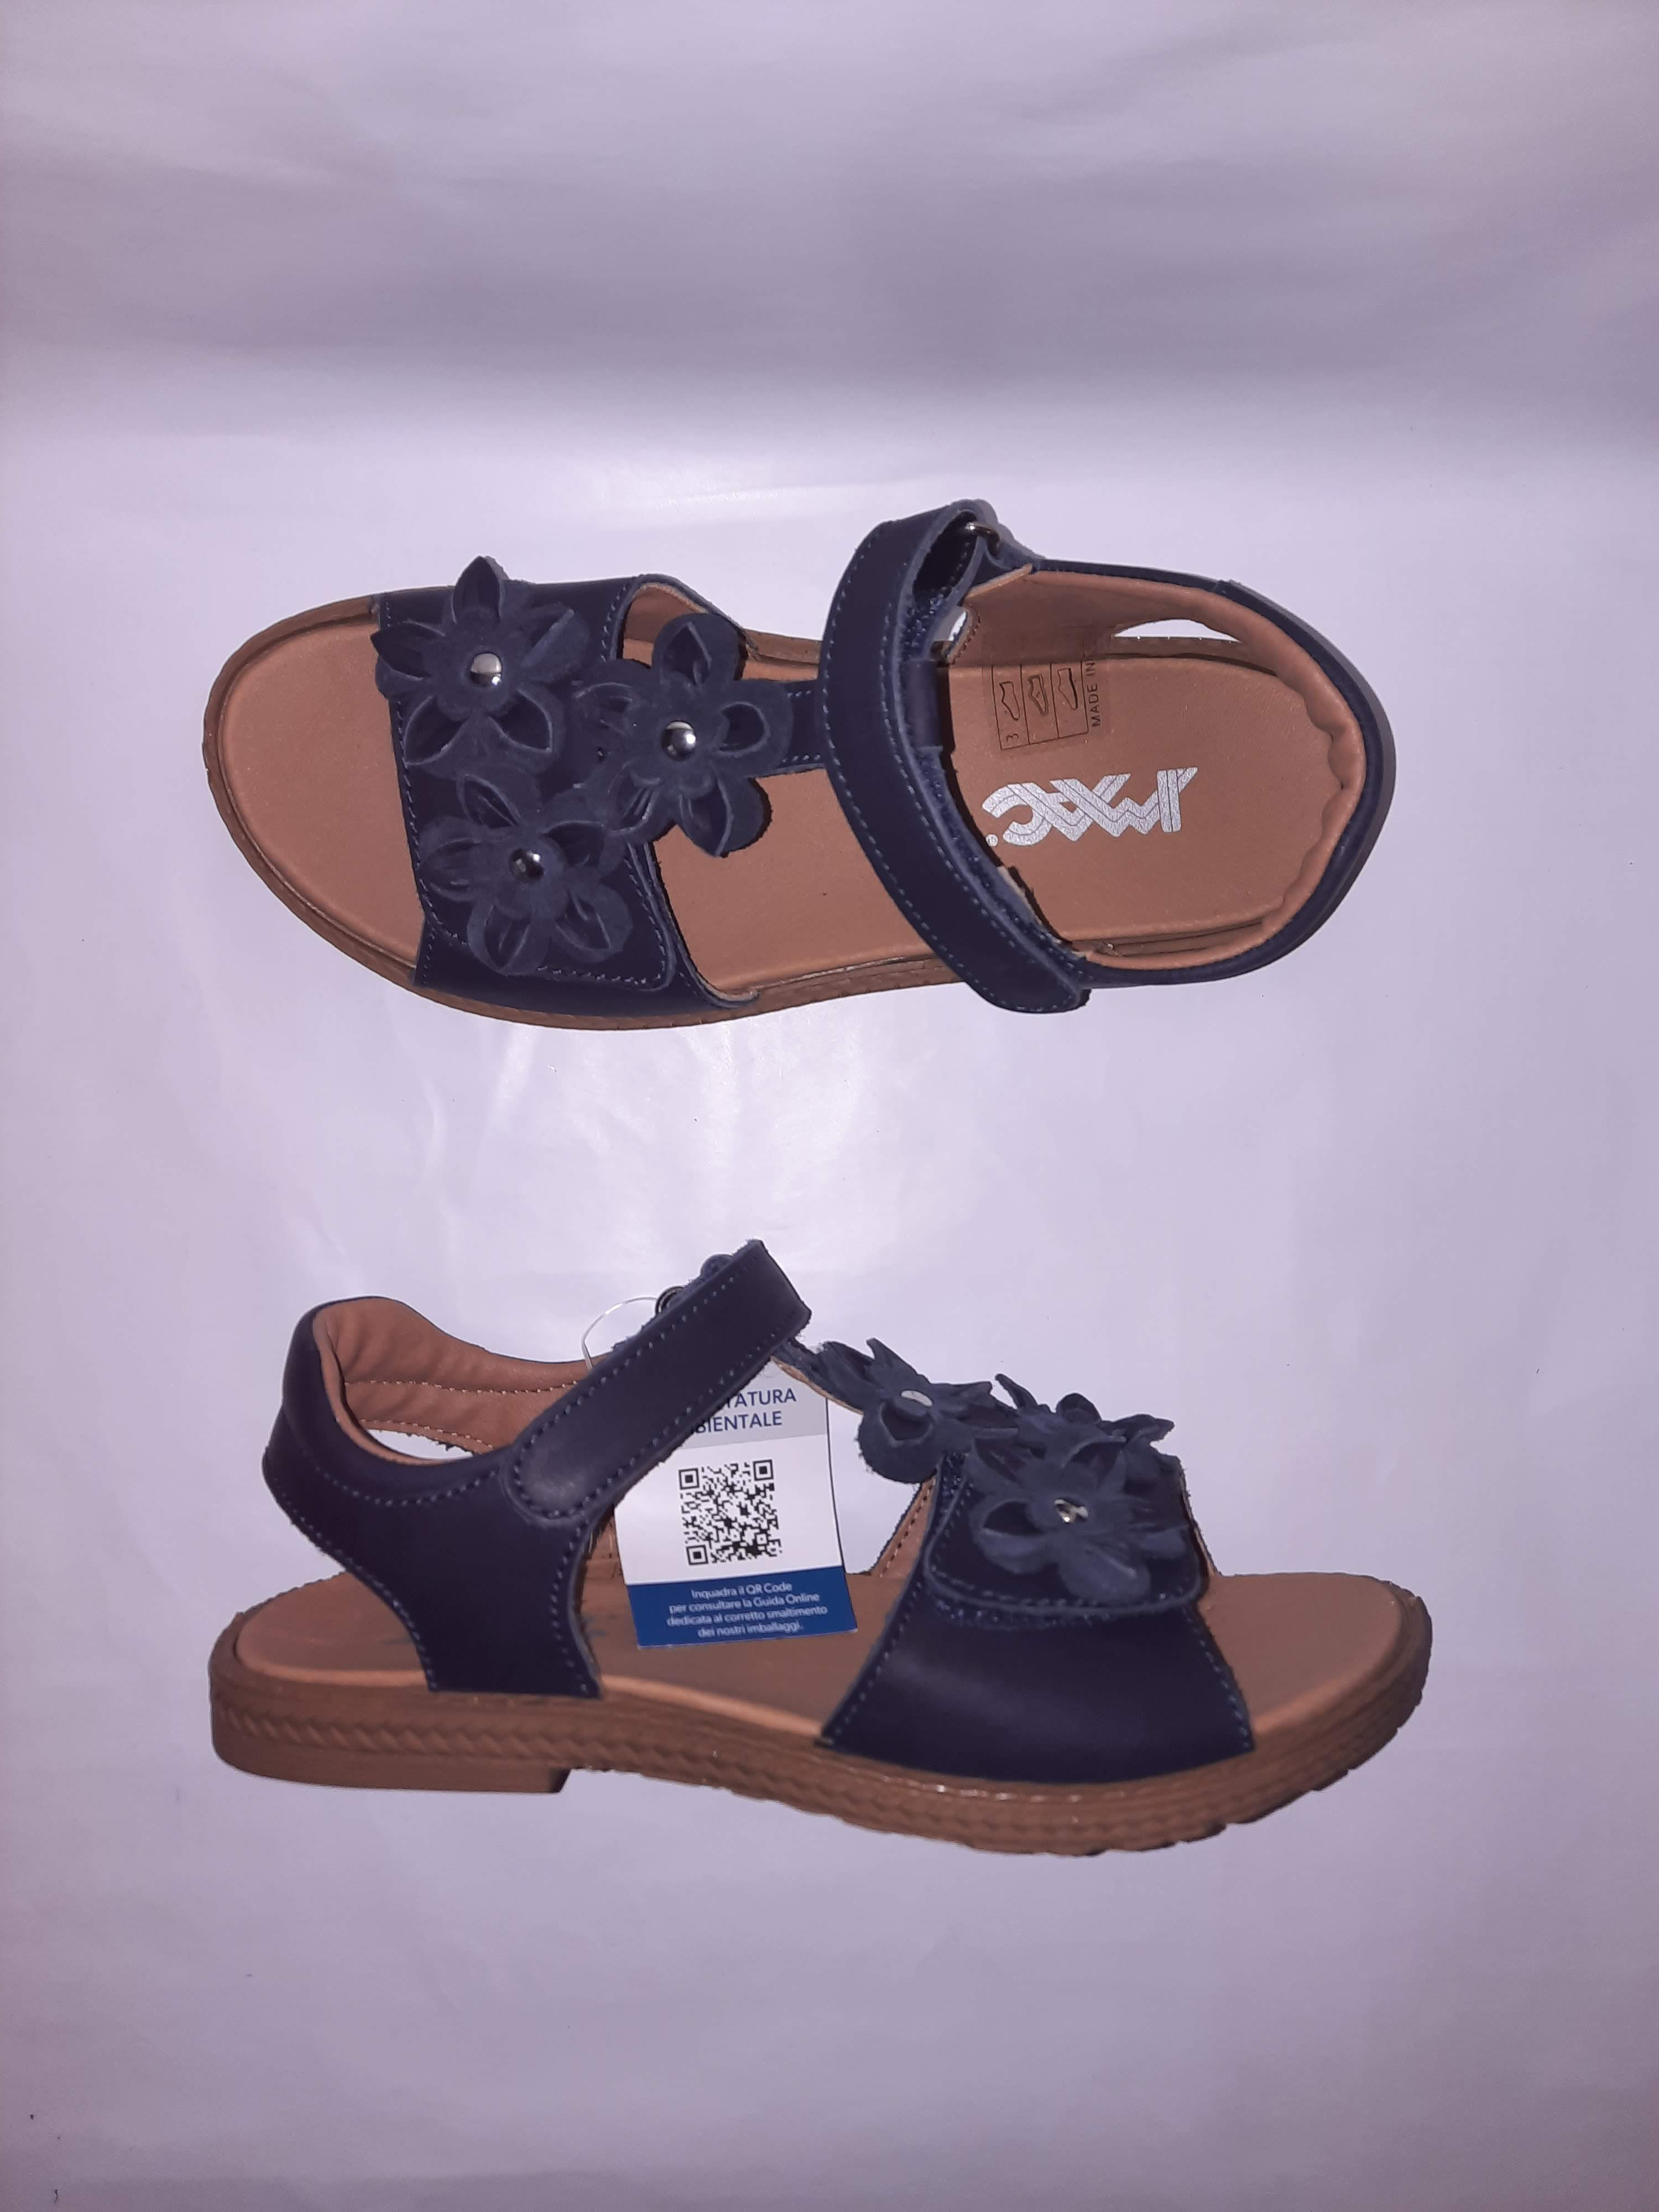 IMAC letní sandálky Amelia blue/black 377424 Velikost: 38